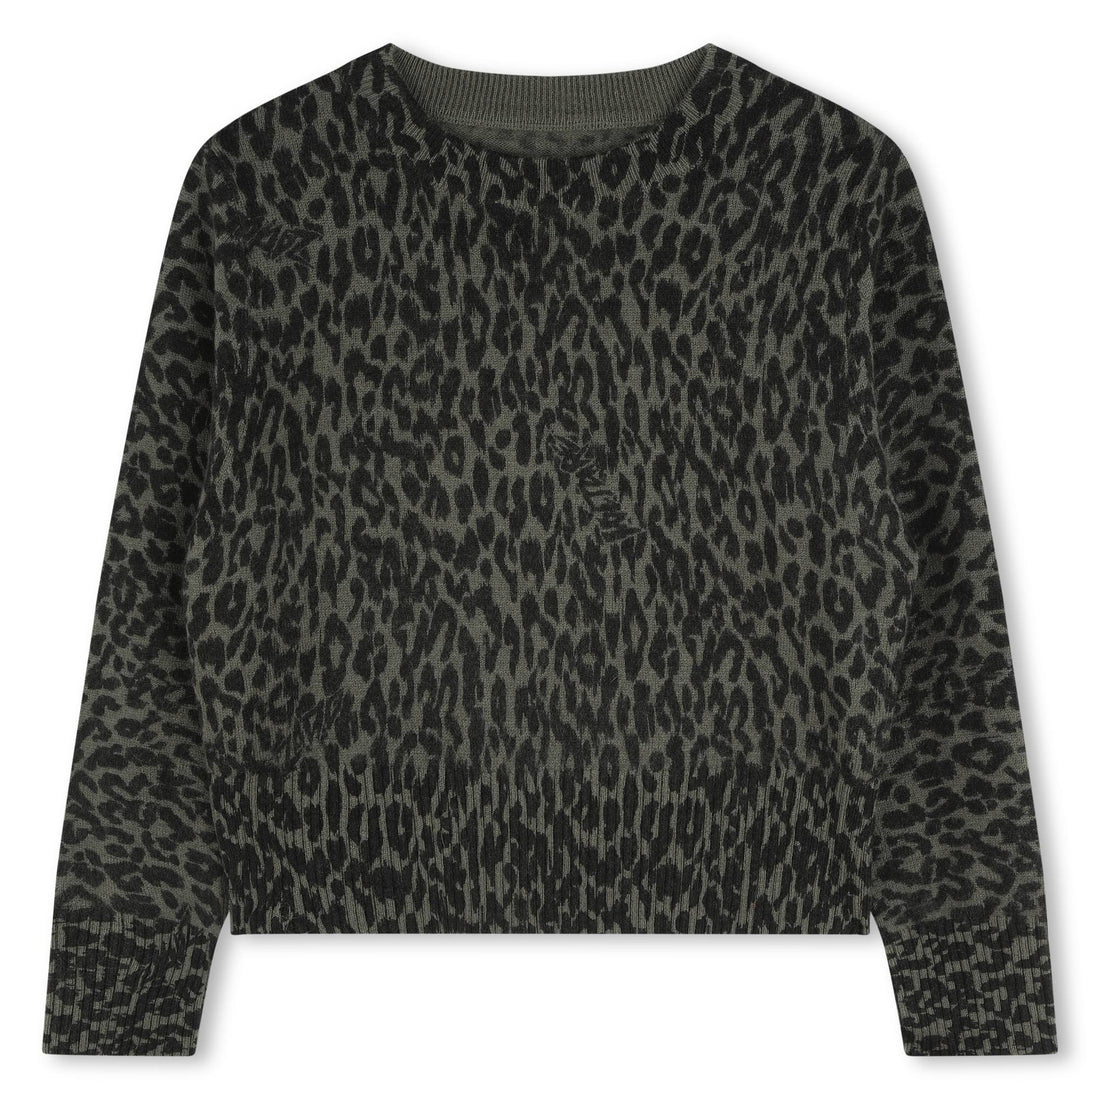 Kinder Leoparden-Jaquard-Pullover